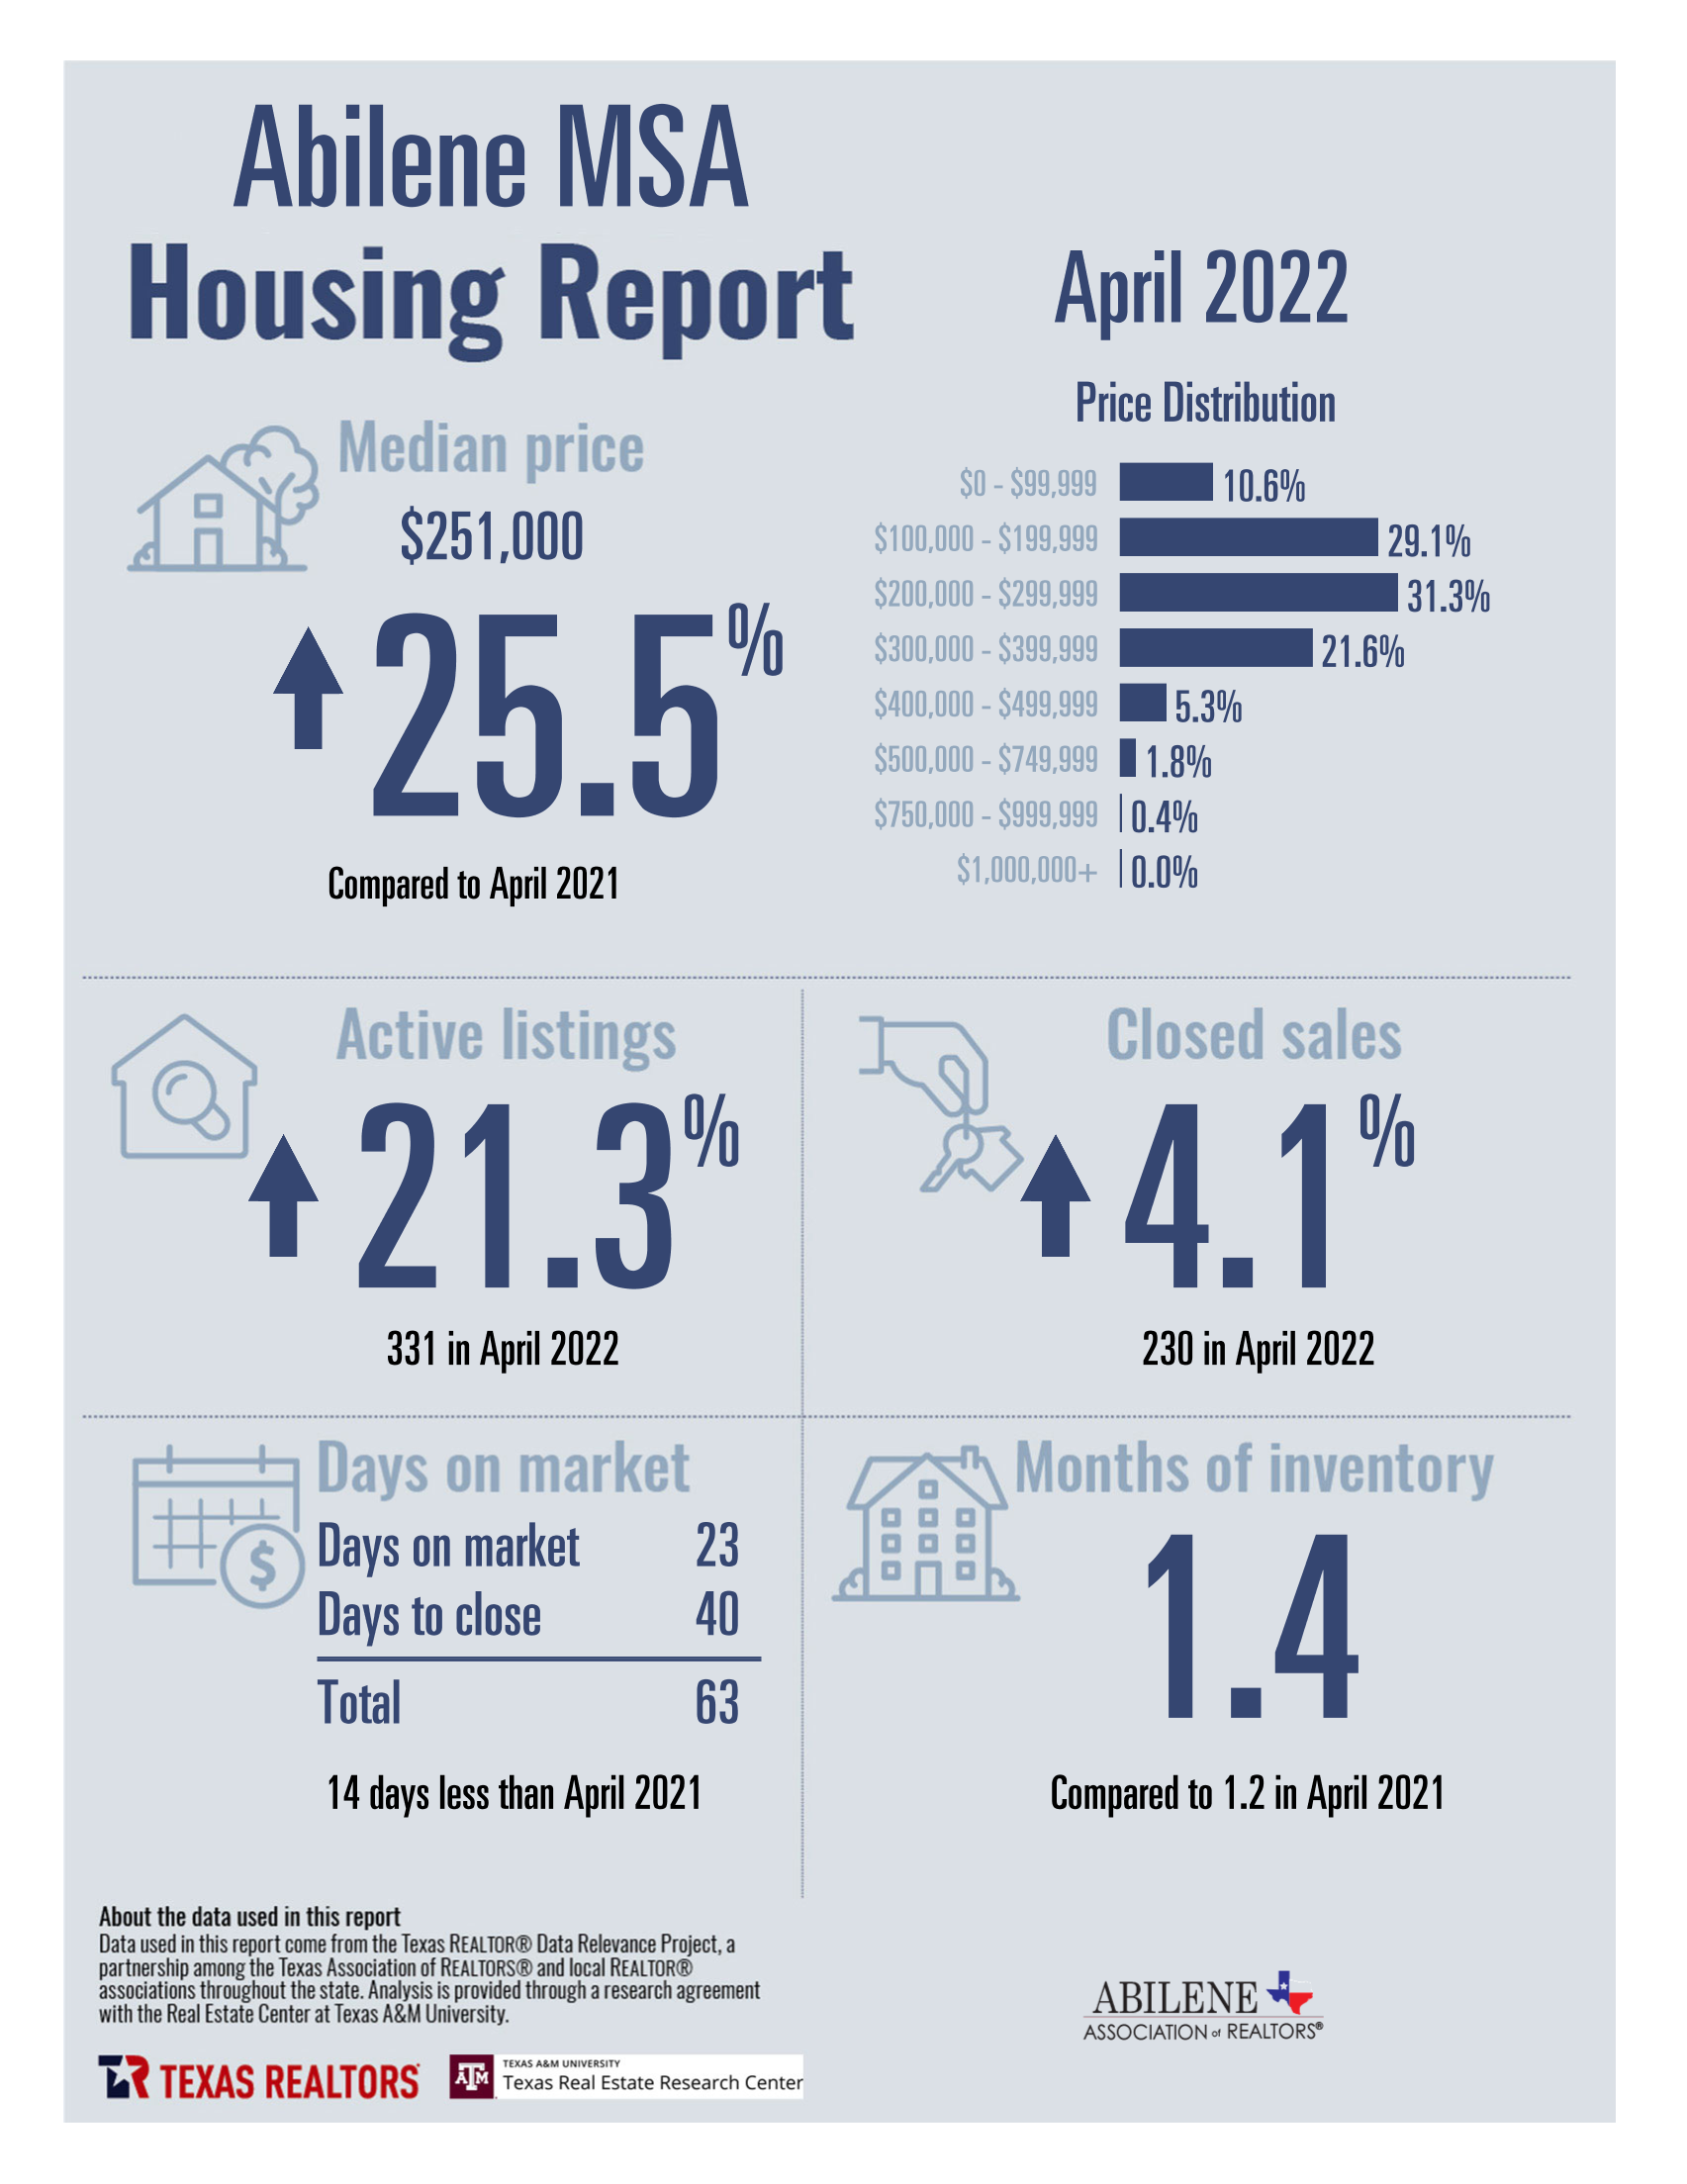 Housing data for Abilene Homes - April 2022